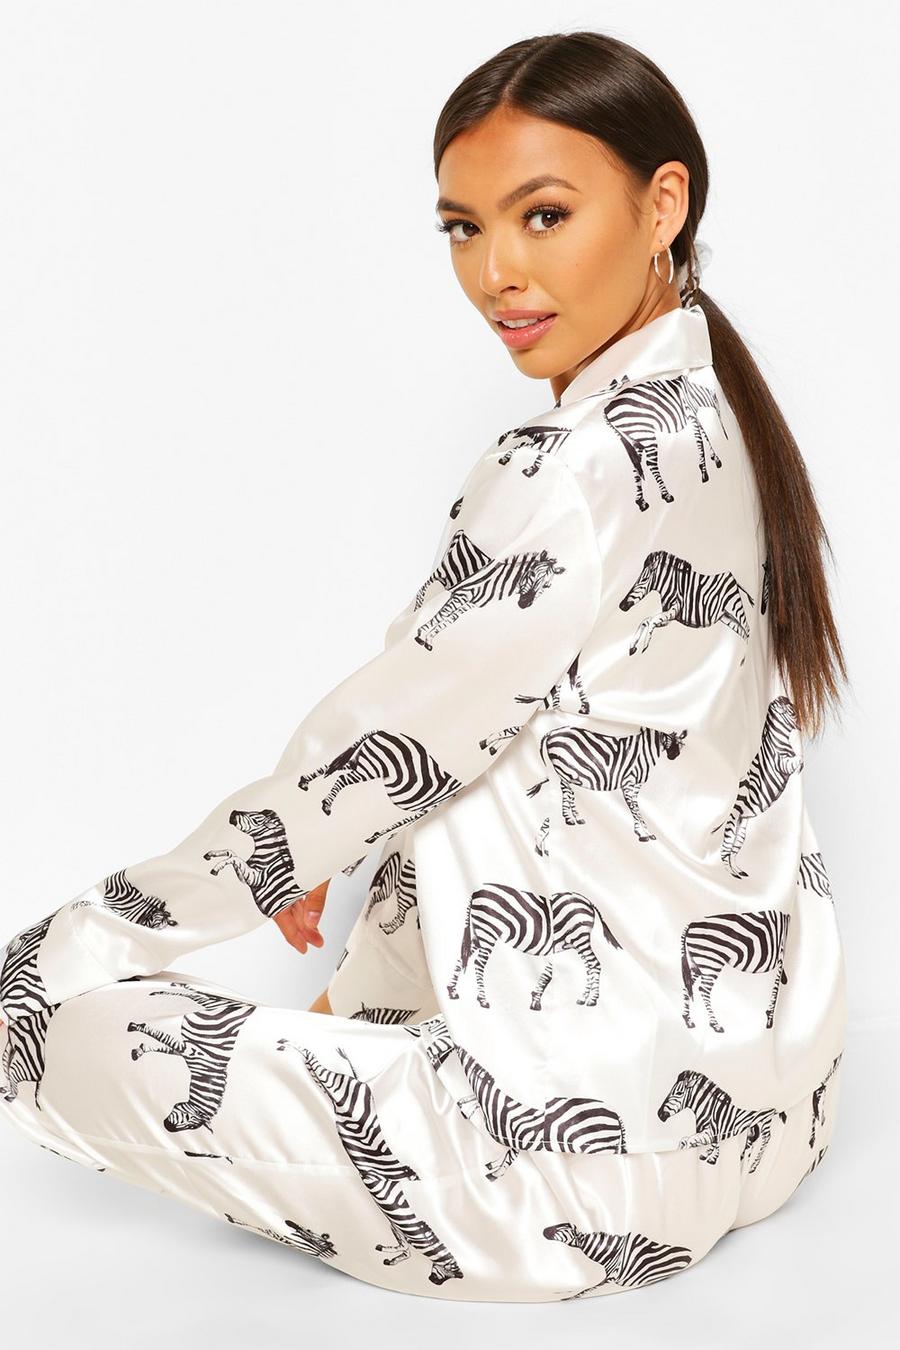 White Femdelat pyjamasset i satin med zebramönster